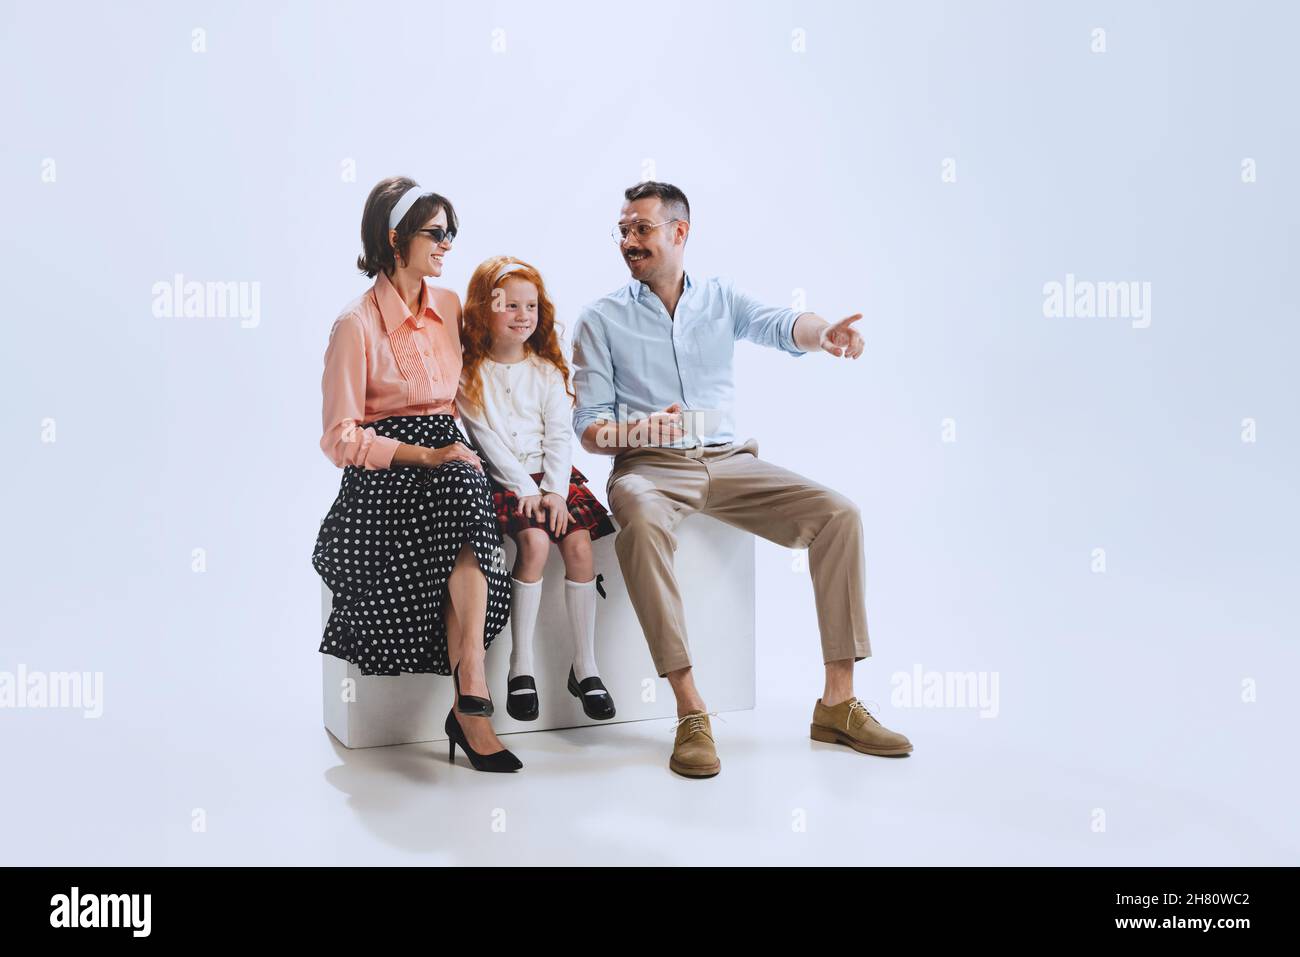 Ritratto di giovane famiglia felice, madre , padre e figlia in stile retrò abiti, moda degli anni '70, sessanta anni seduti insieme isolato su bianco Foto Stock